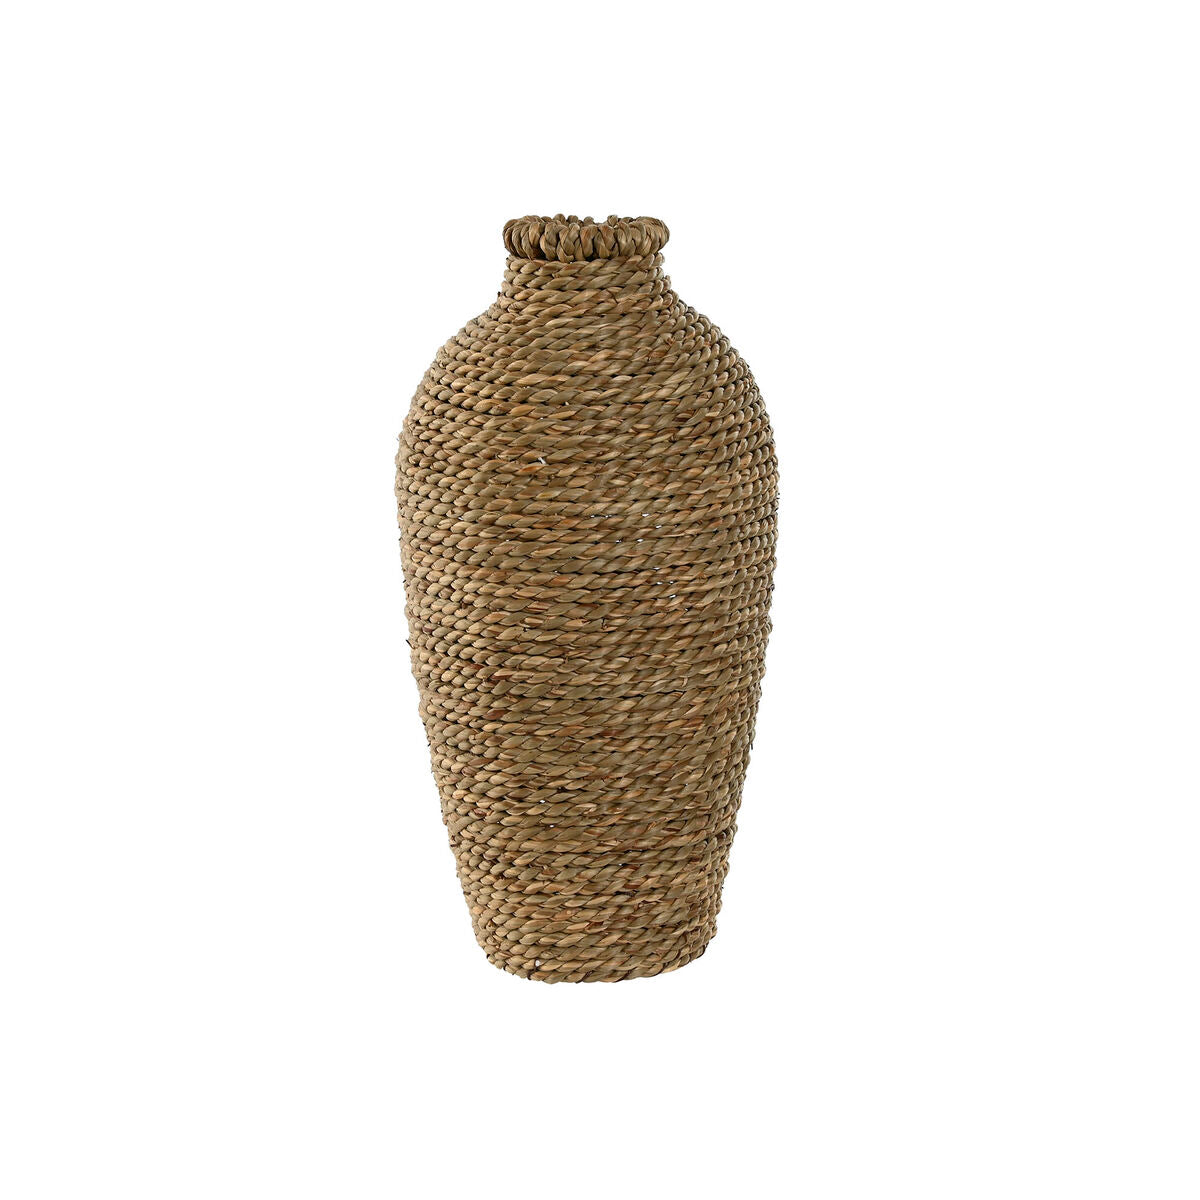 Vase Home ESPRIT natürlich Tropical 15 x 15 x 32 cm